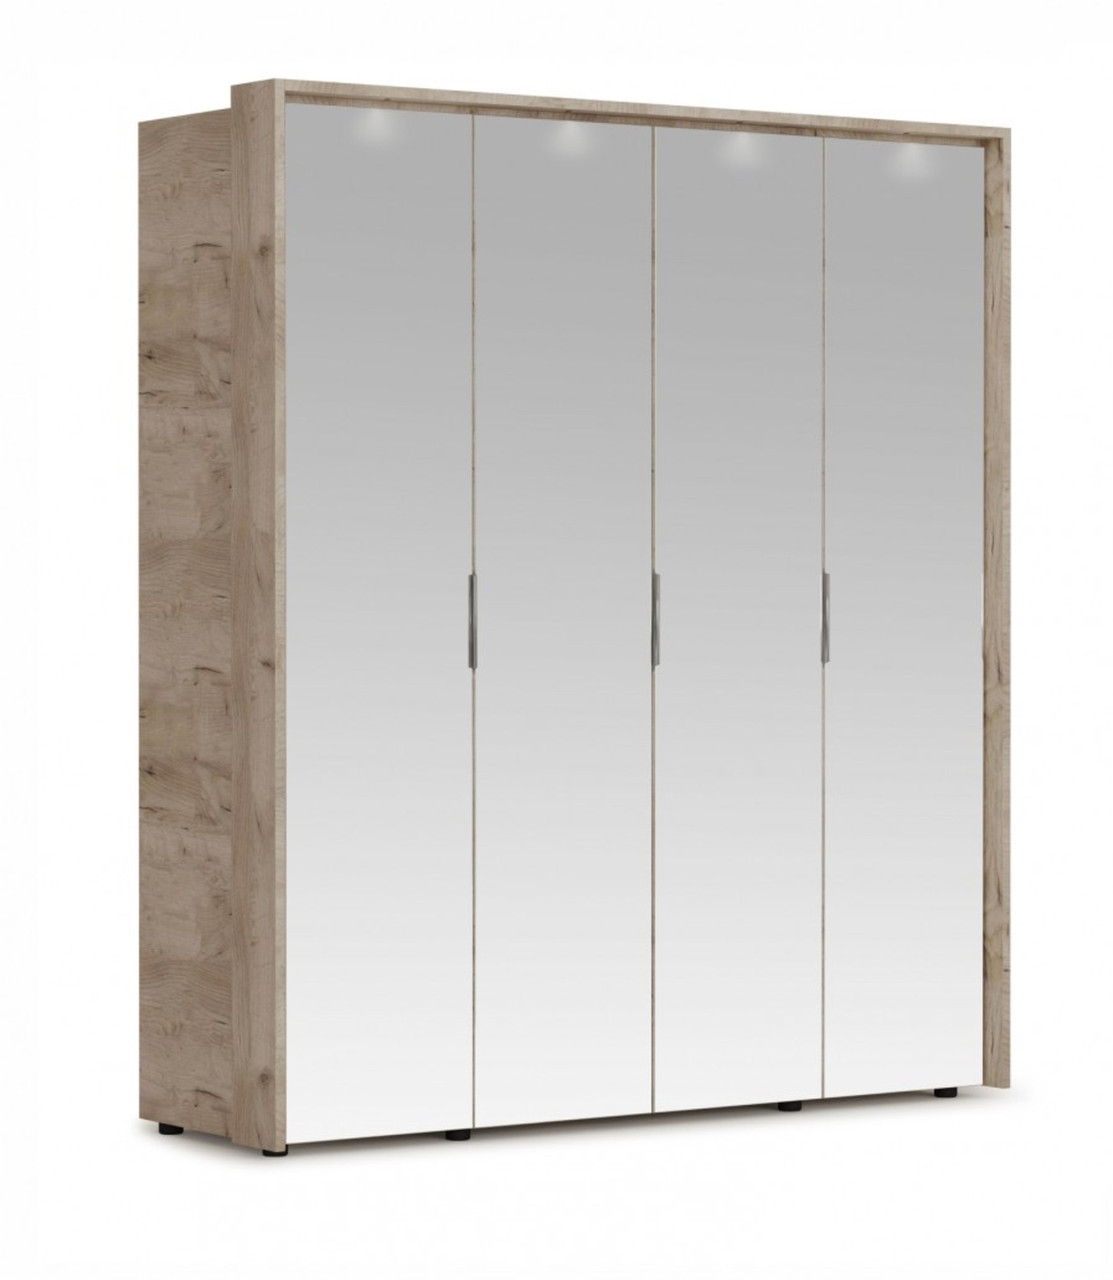 Распашной шкаф Джулия 4дв (4 зерк) с порталом Крафт серый/белый глянец